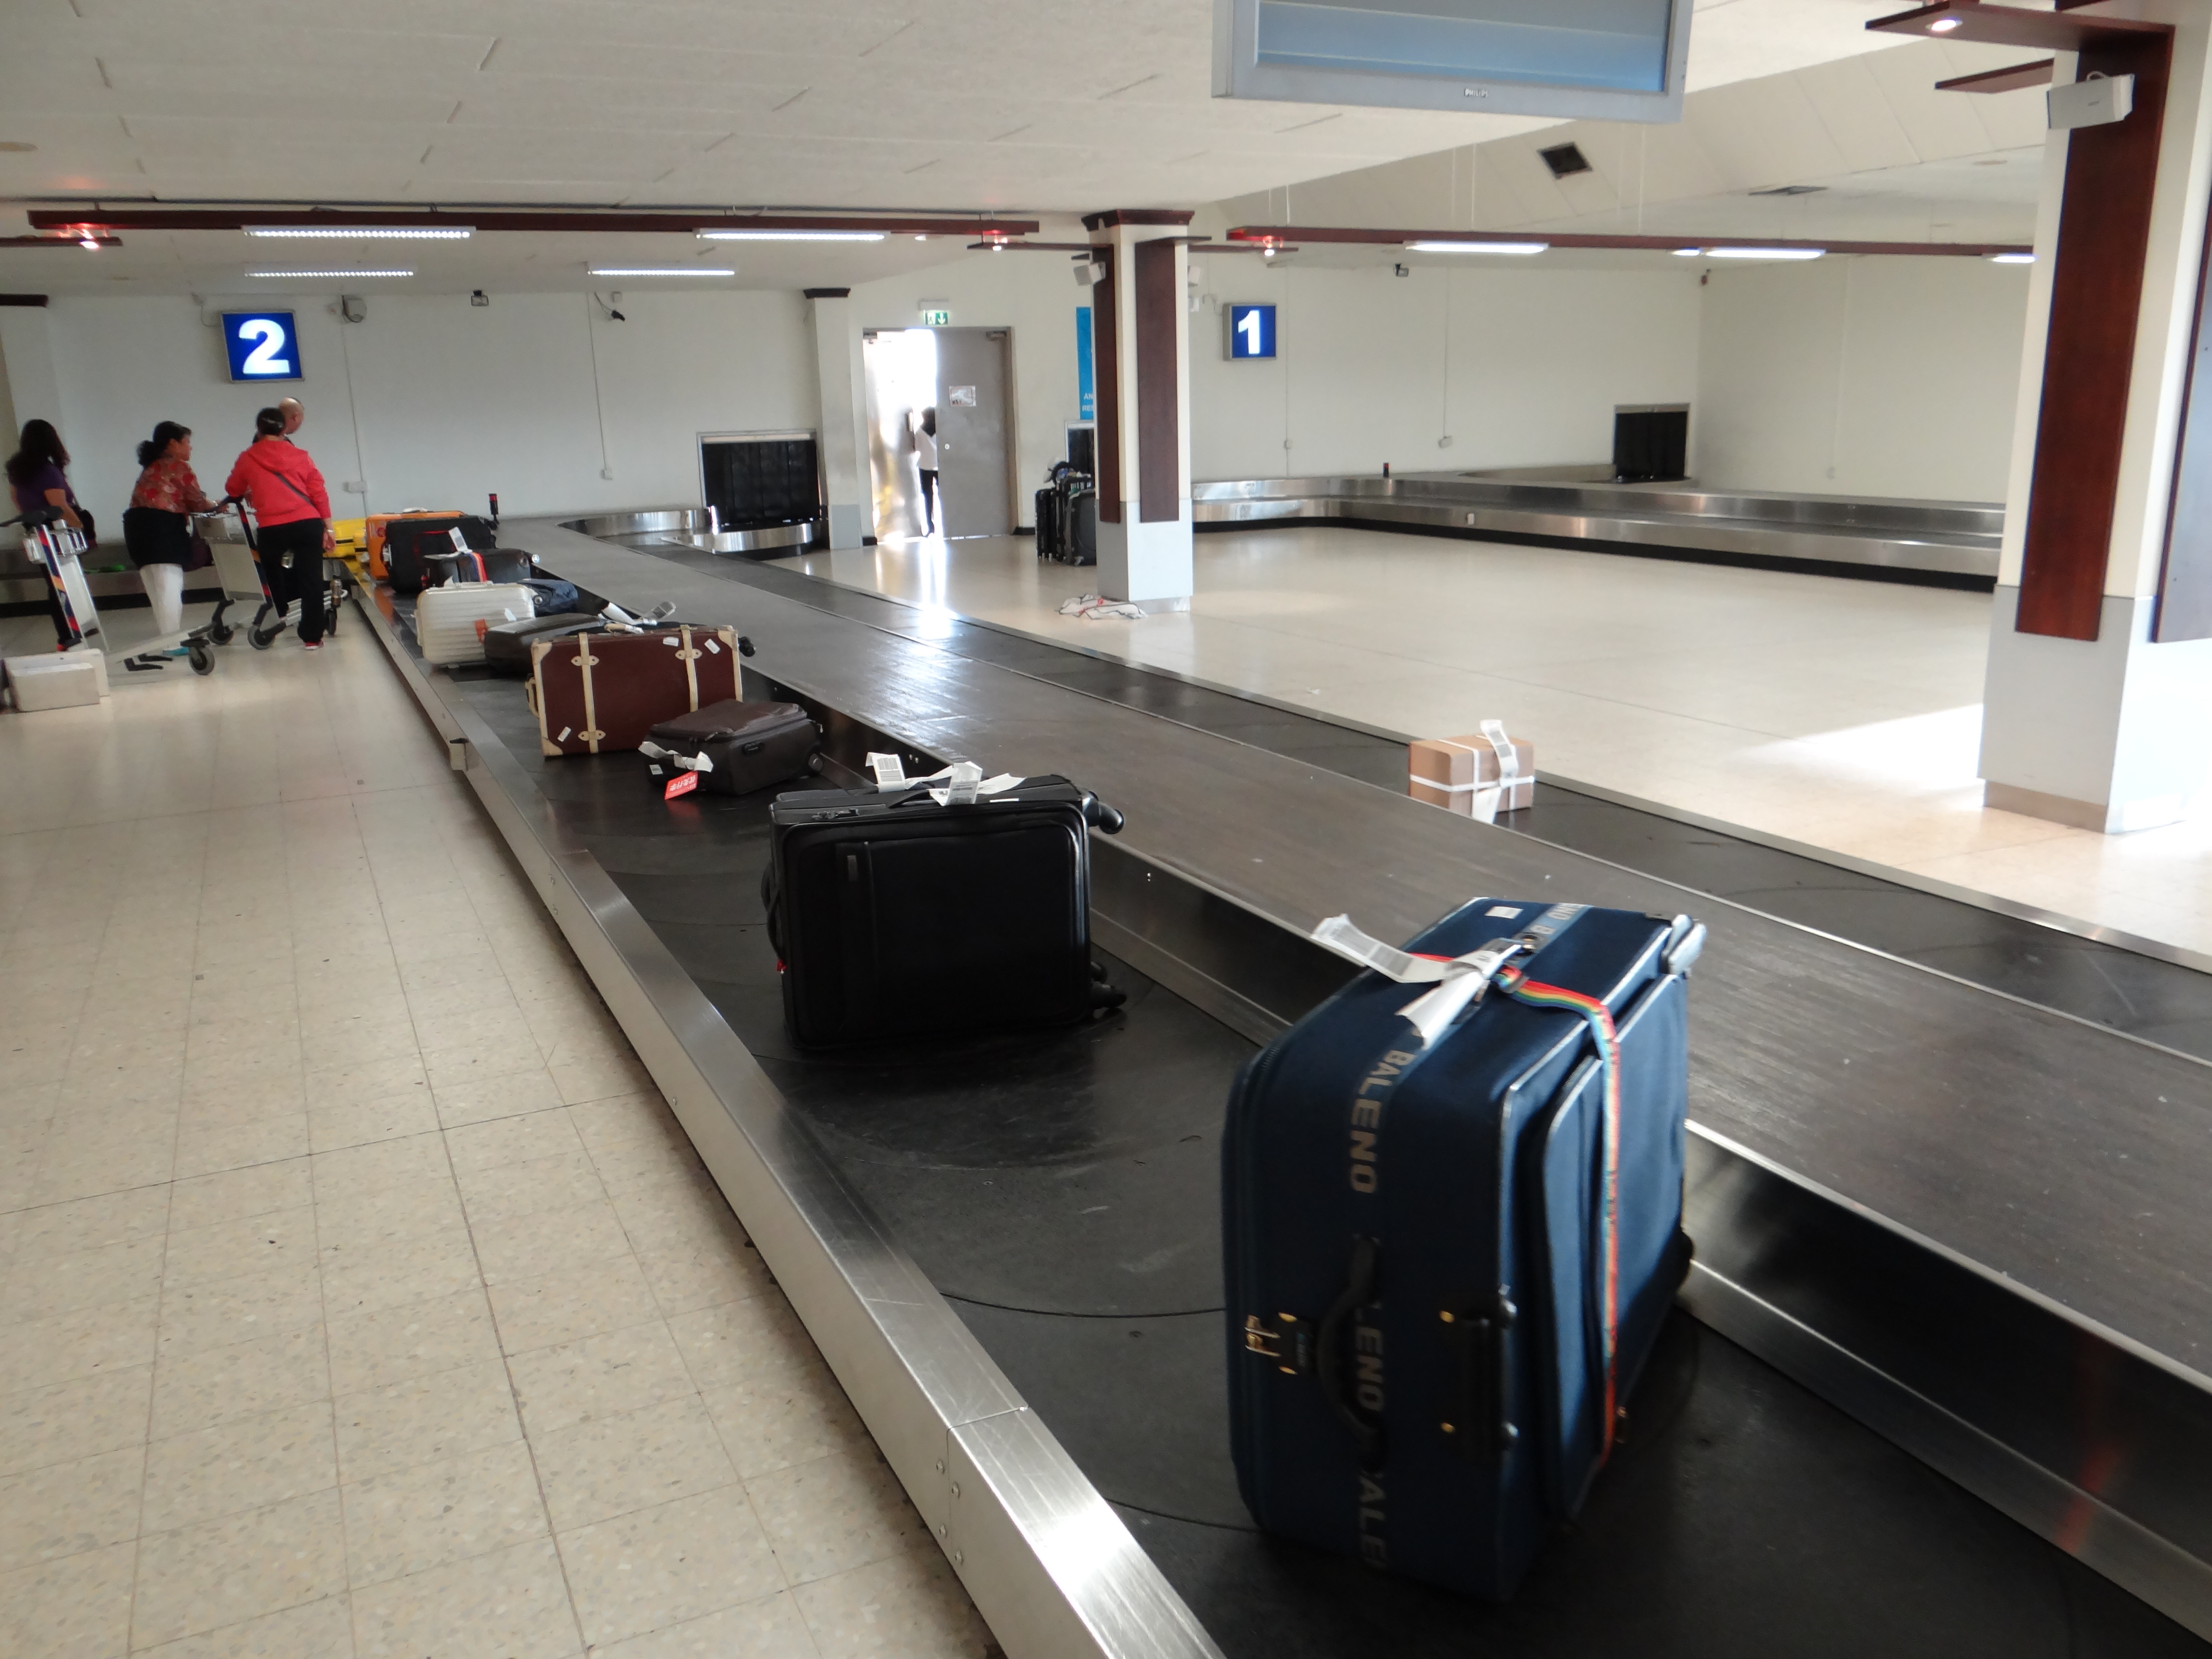 到达马累机场 到达马累机场后要办理落地签,取托运行李,然后找举着